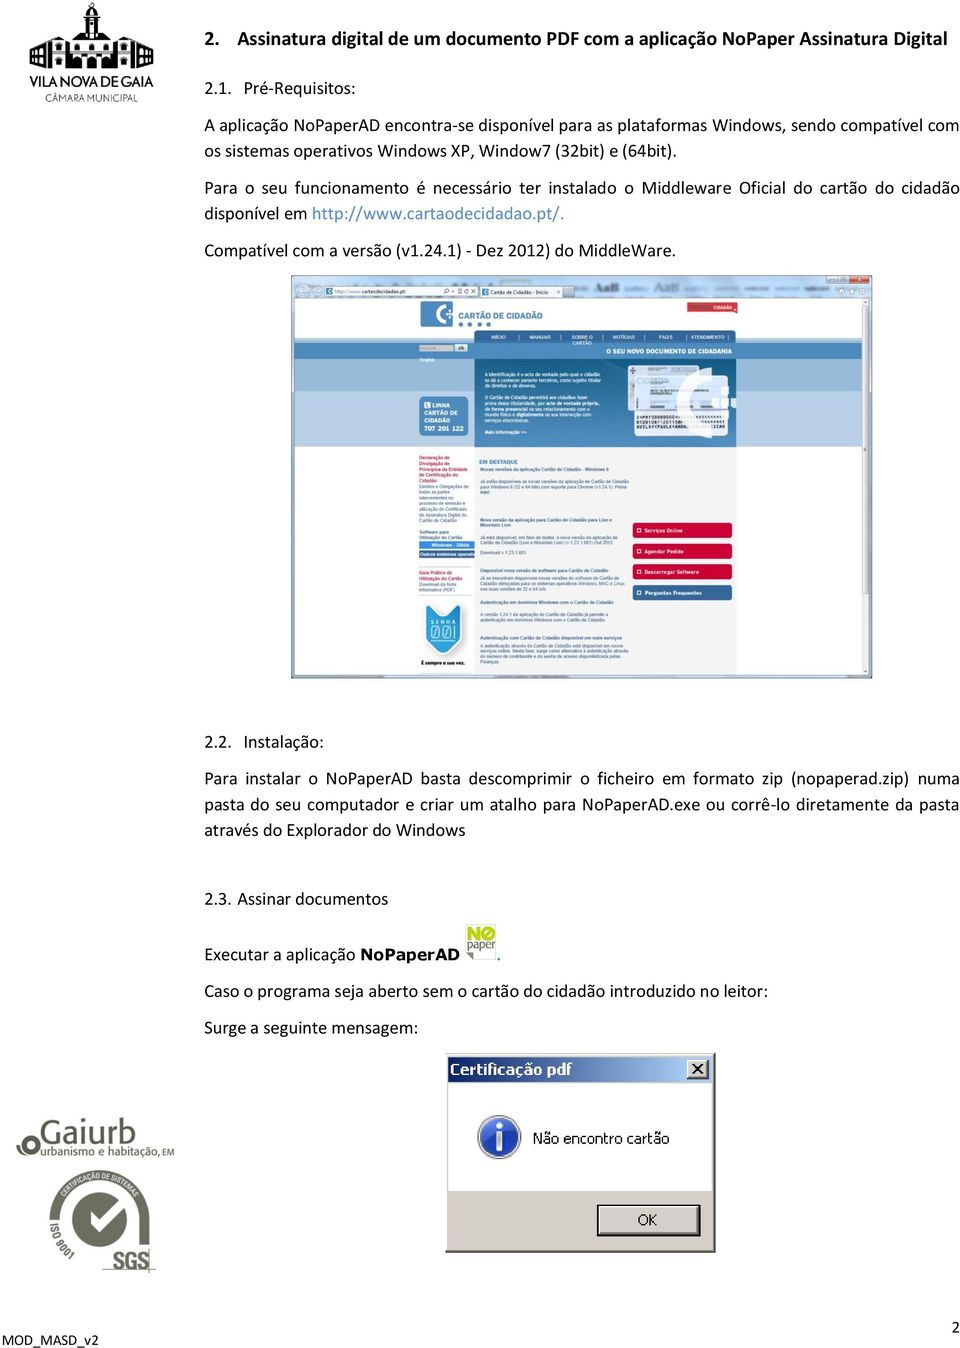 Para o seu funcionamento é necessário ter instalado o Middleware Oficial do cartão do cidadão disponível em http://www.cartaodecidadao.pt/. Compatível com a versão (v1.24.1) - Dez 2012) do MiddleWare.